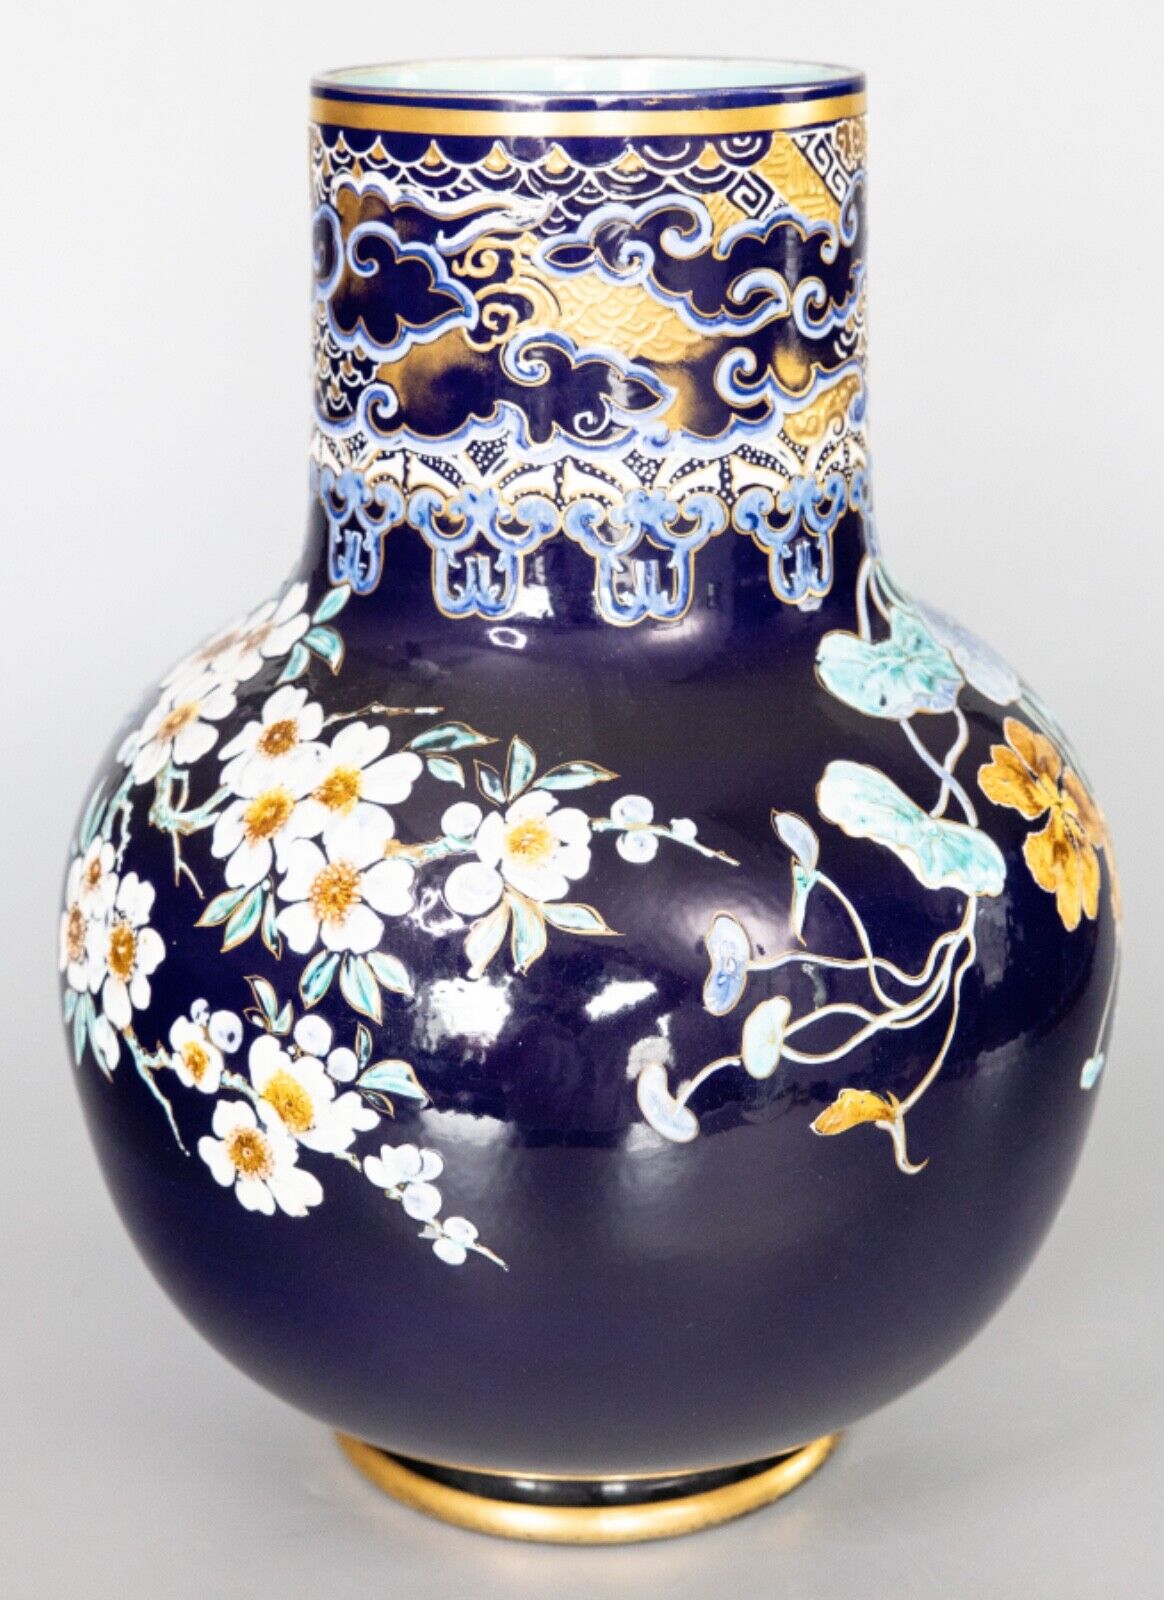 Monumental Antique 19th Century French Sarreguemines Majolica Vase